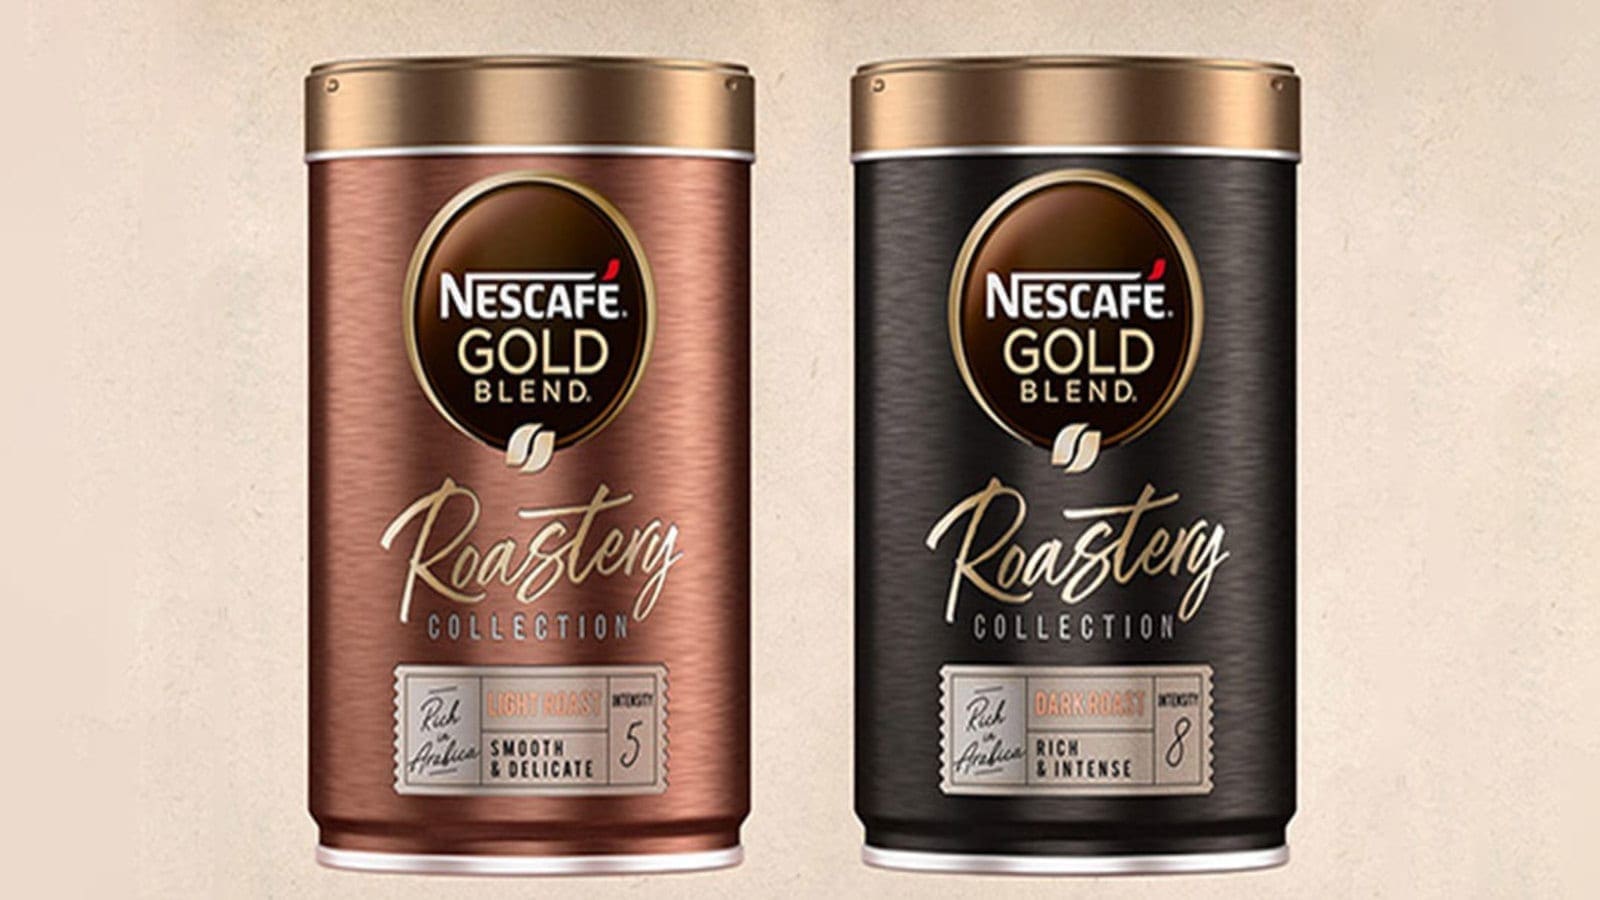 Nestlé launches super premium Nescafe coffee, to acquire core brands of The Bountiful Company for US$5.75bn